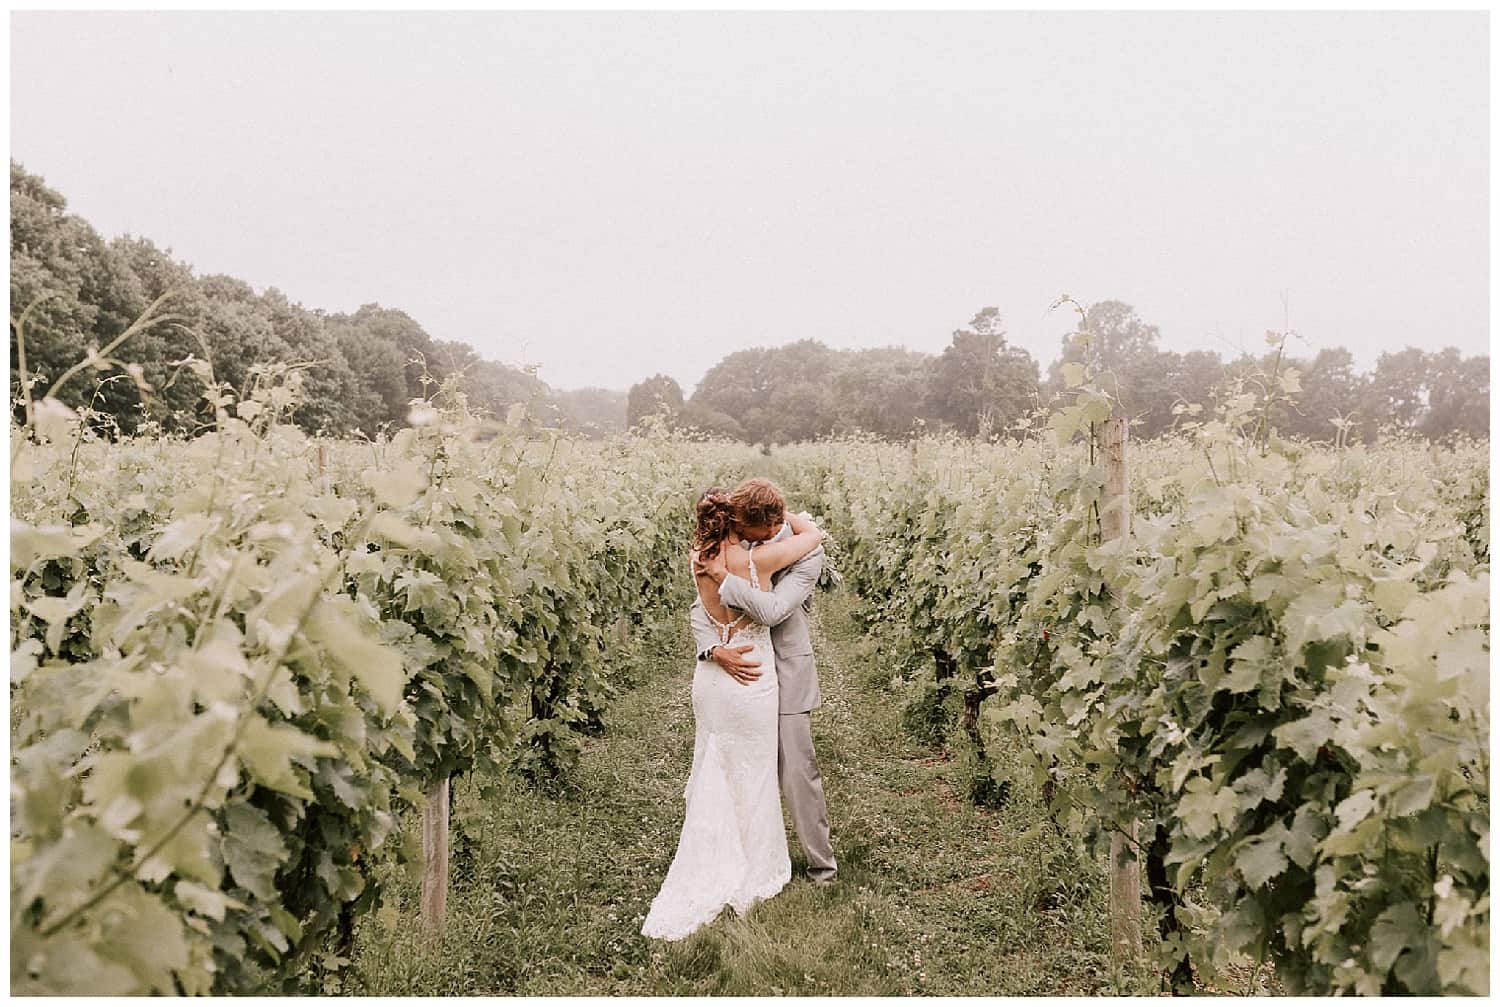 Winery wedding venue on Long Island, NY